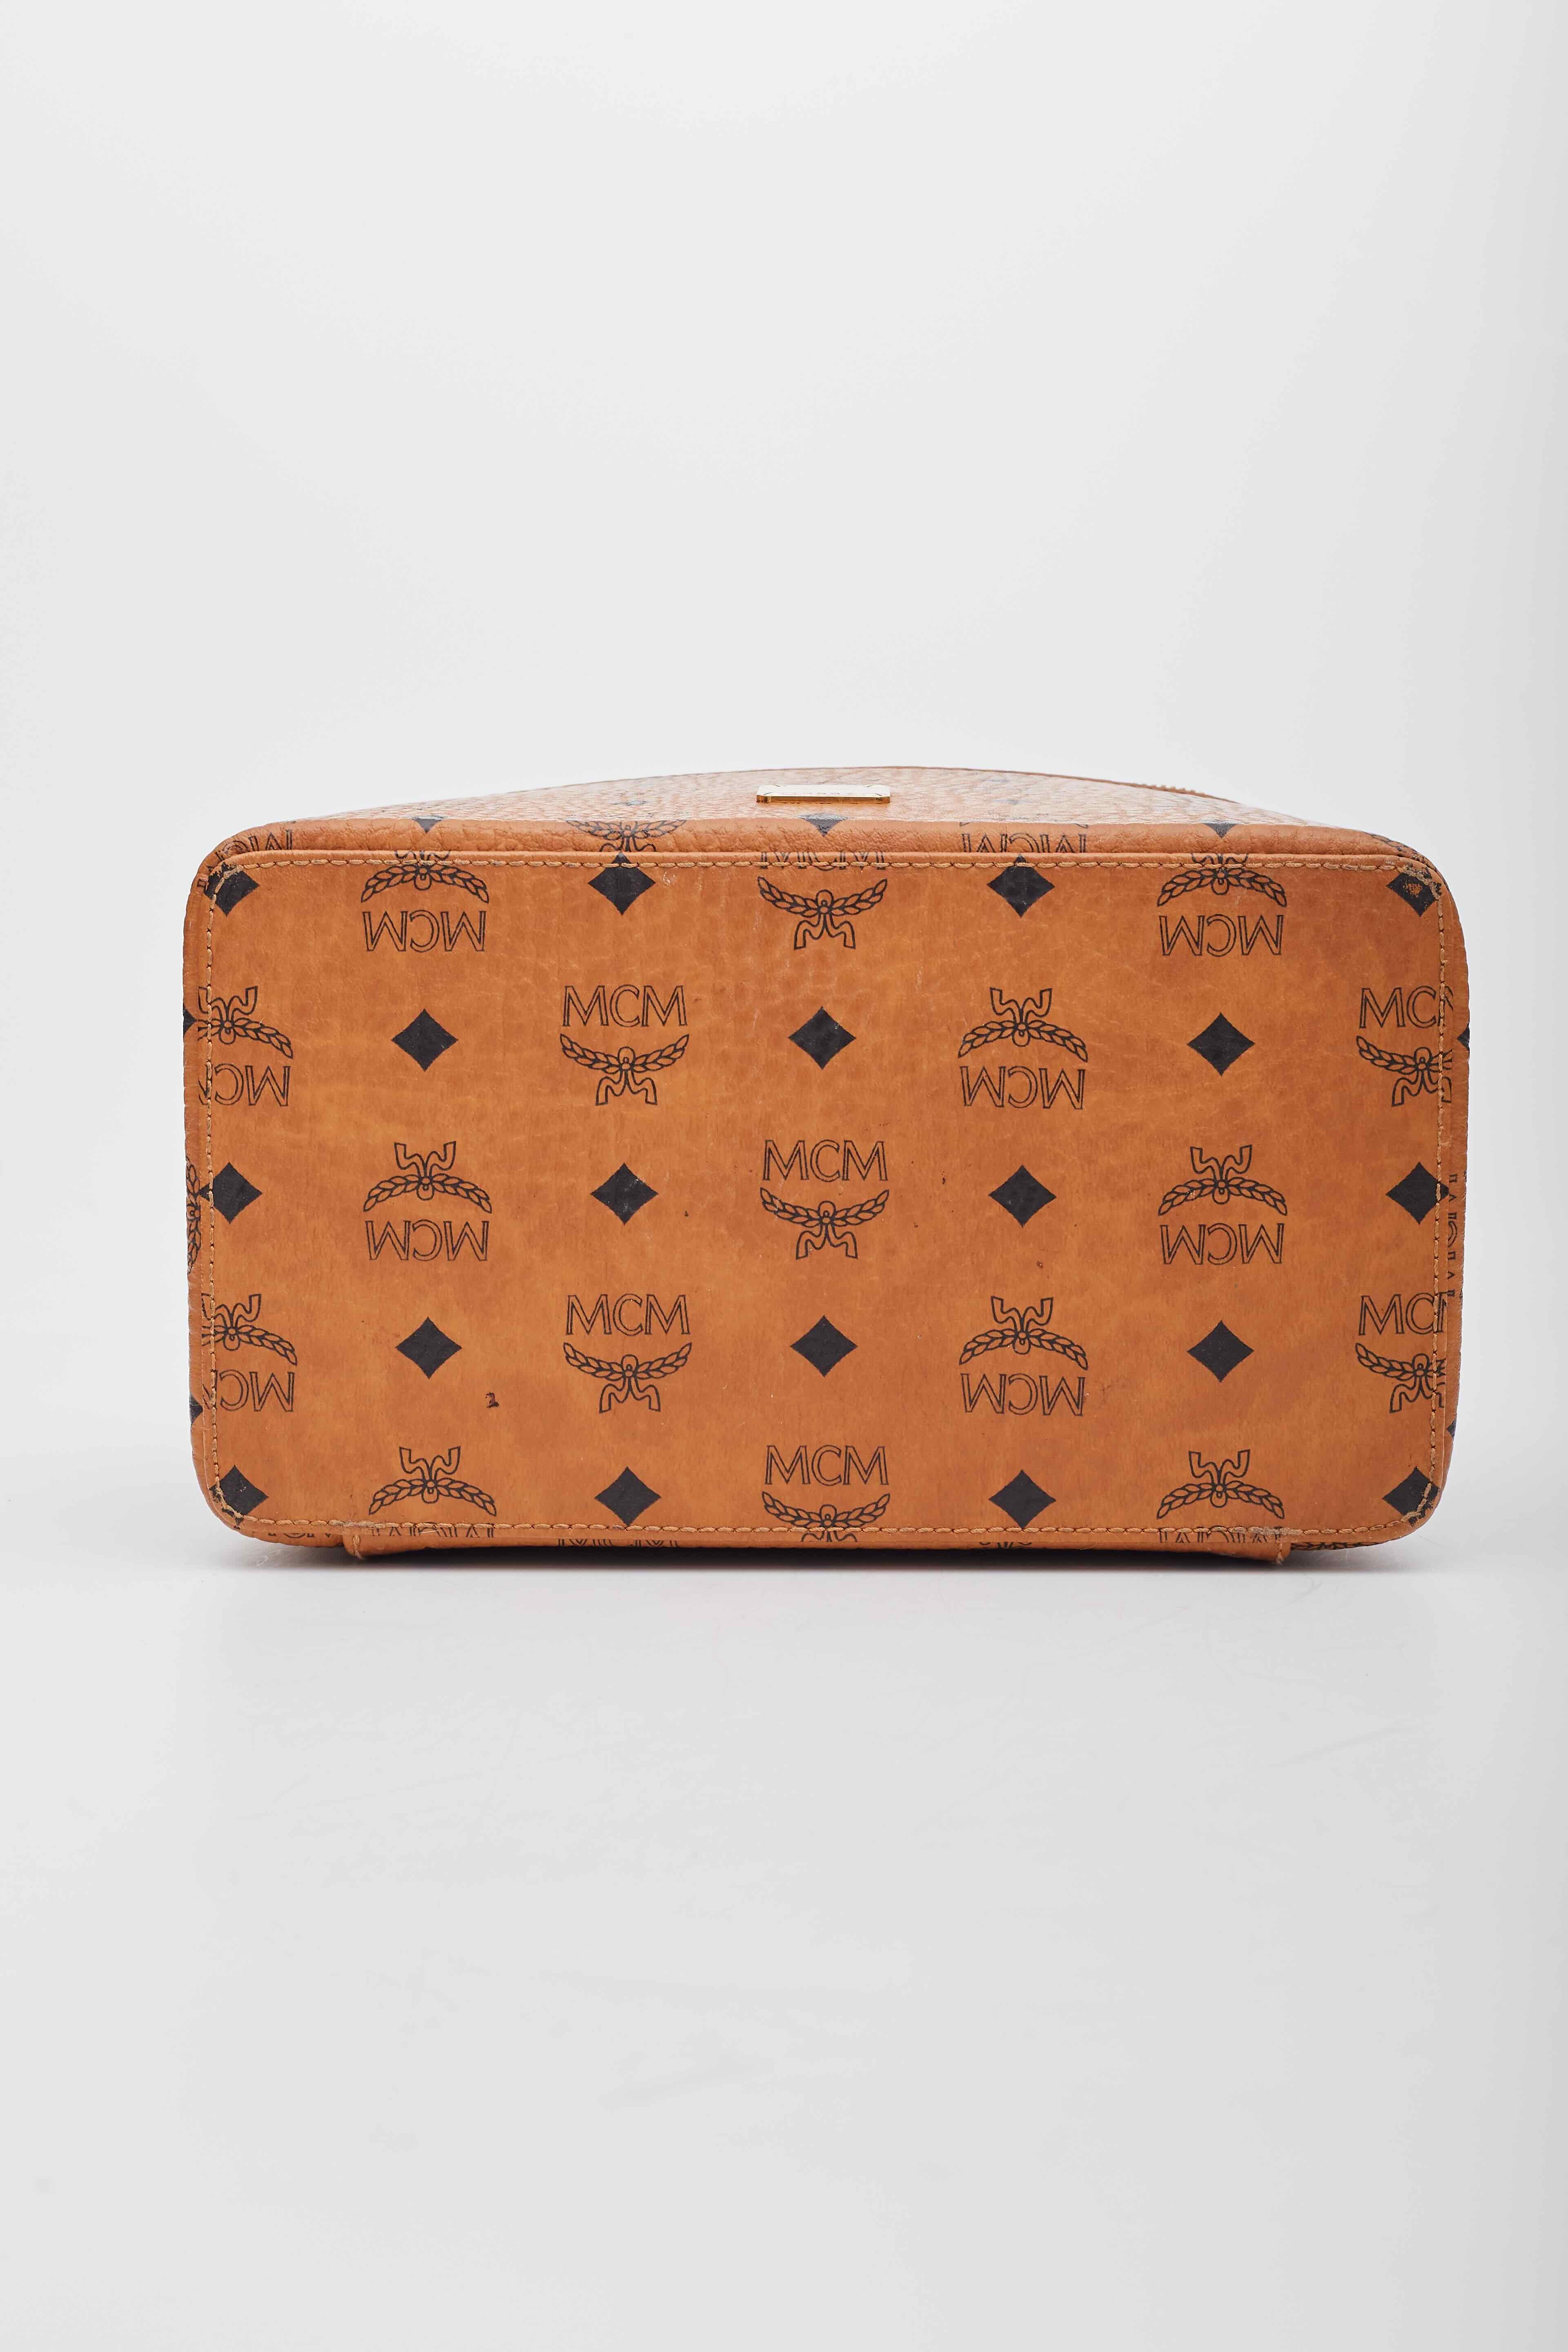 MCM Visetos Vanity Case Cognac Canvas Top Handle Bag For Sale 2